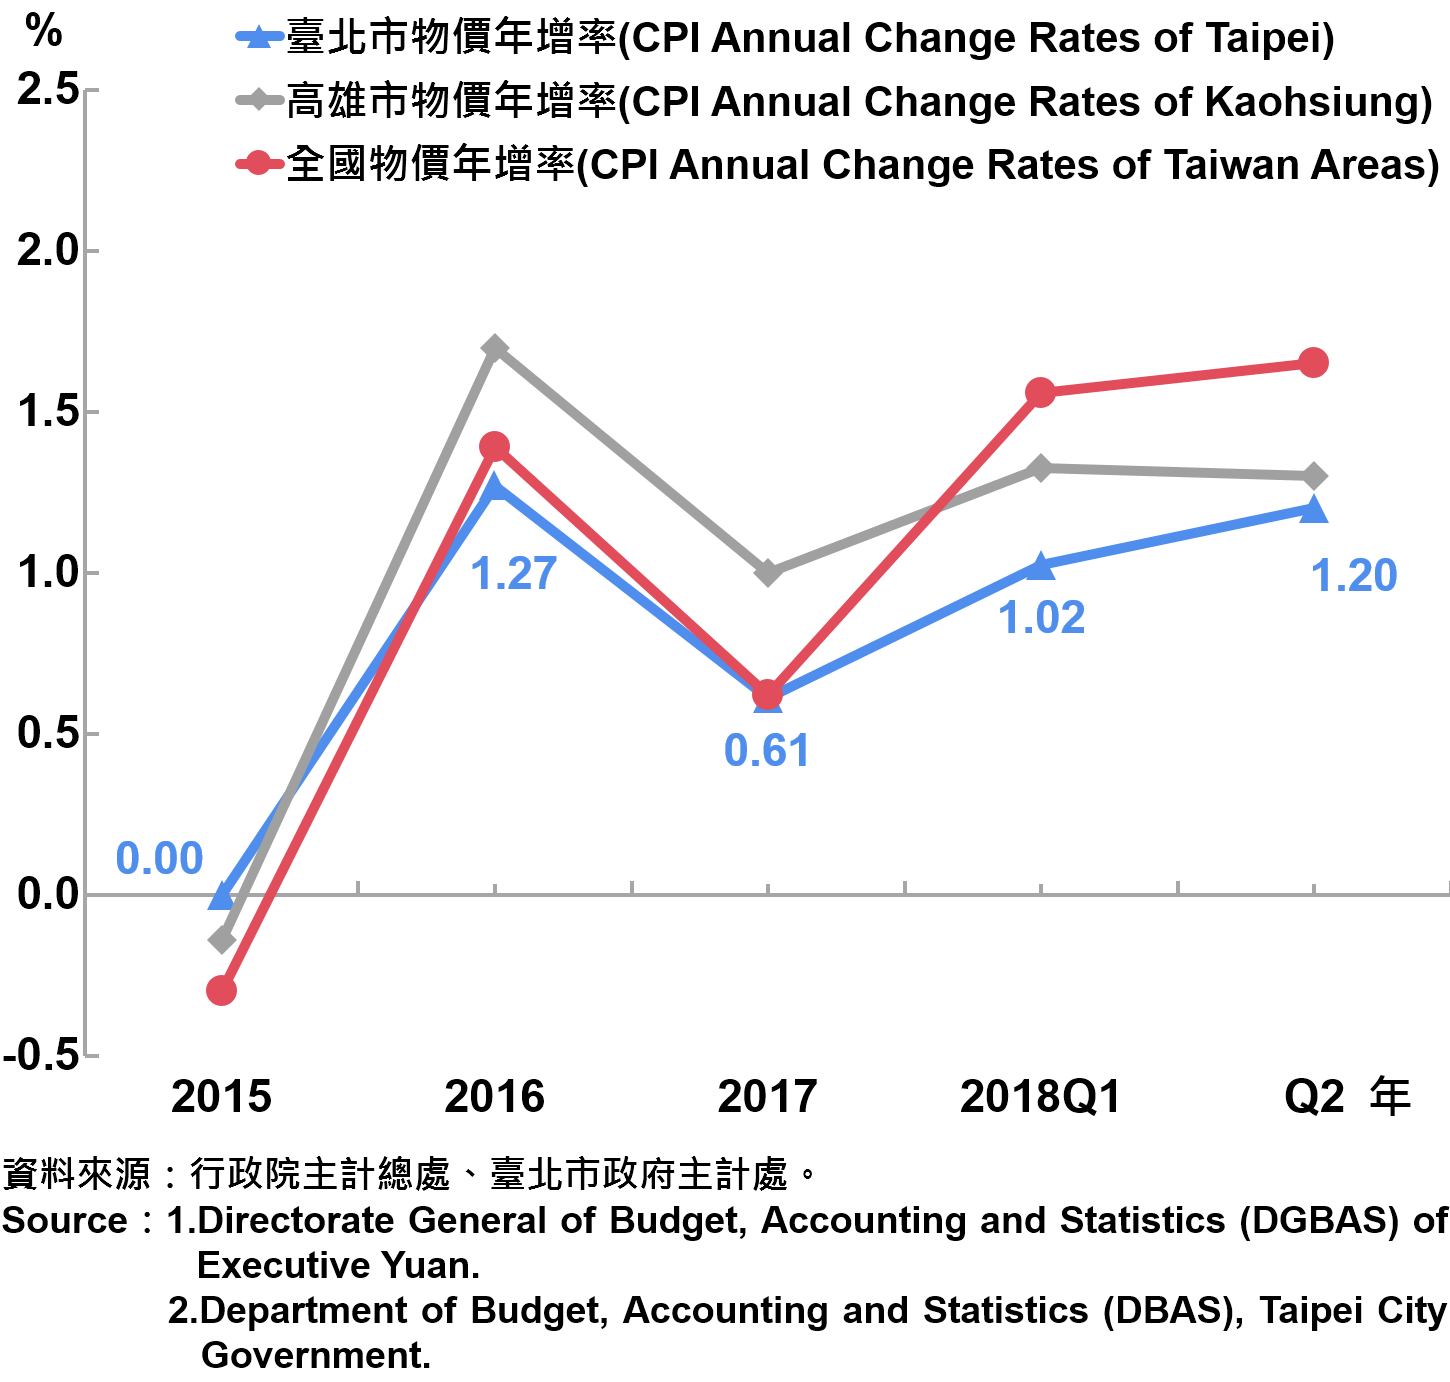 臺北市消費者物價指數（CPI）年增率—2018Q2 The Changes of CPI in Taipei City—2018Q2